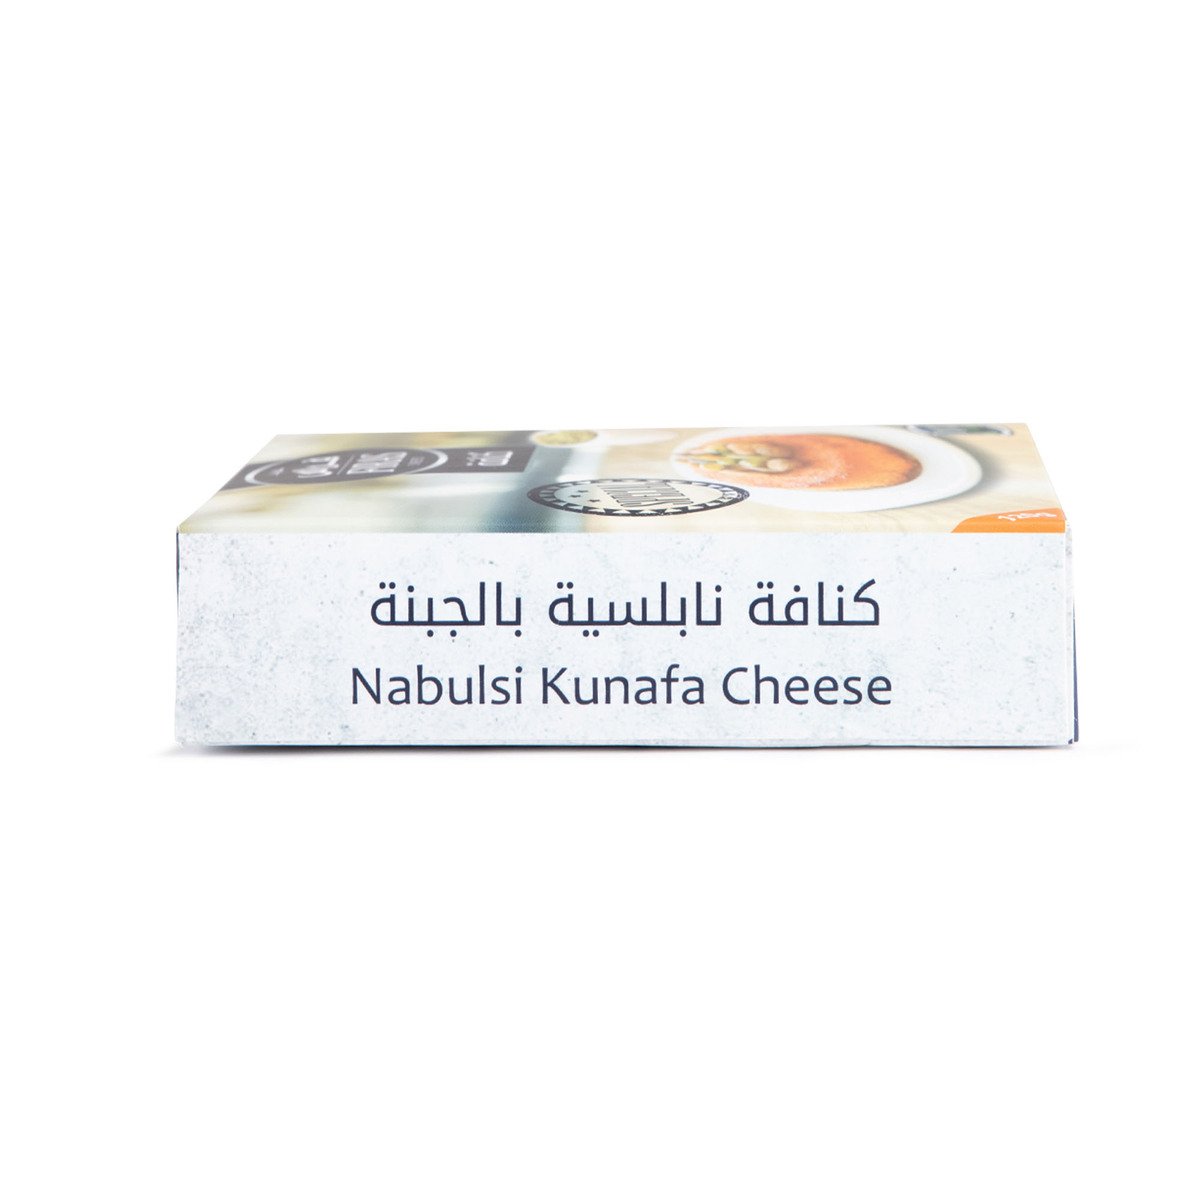 حلويات فراس كنافة نابلسي مميزة بالجبنة 120 جم